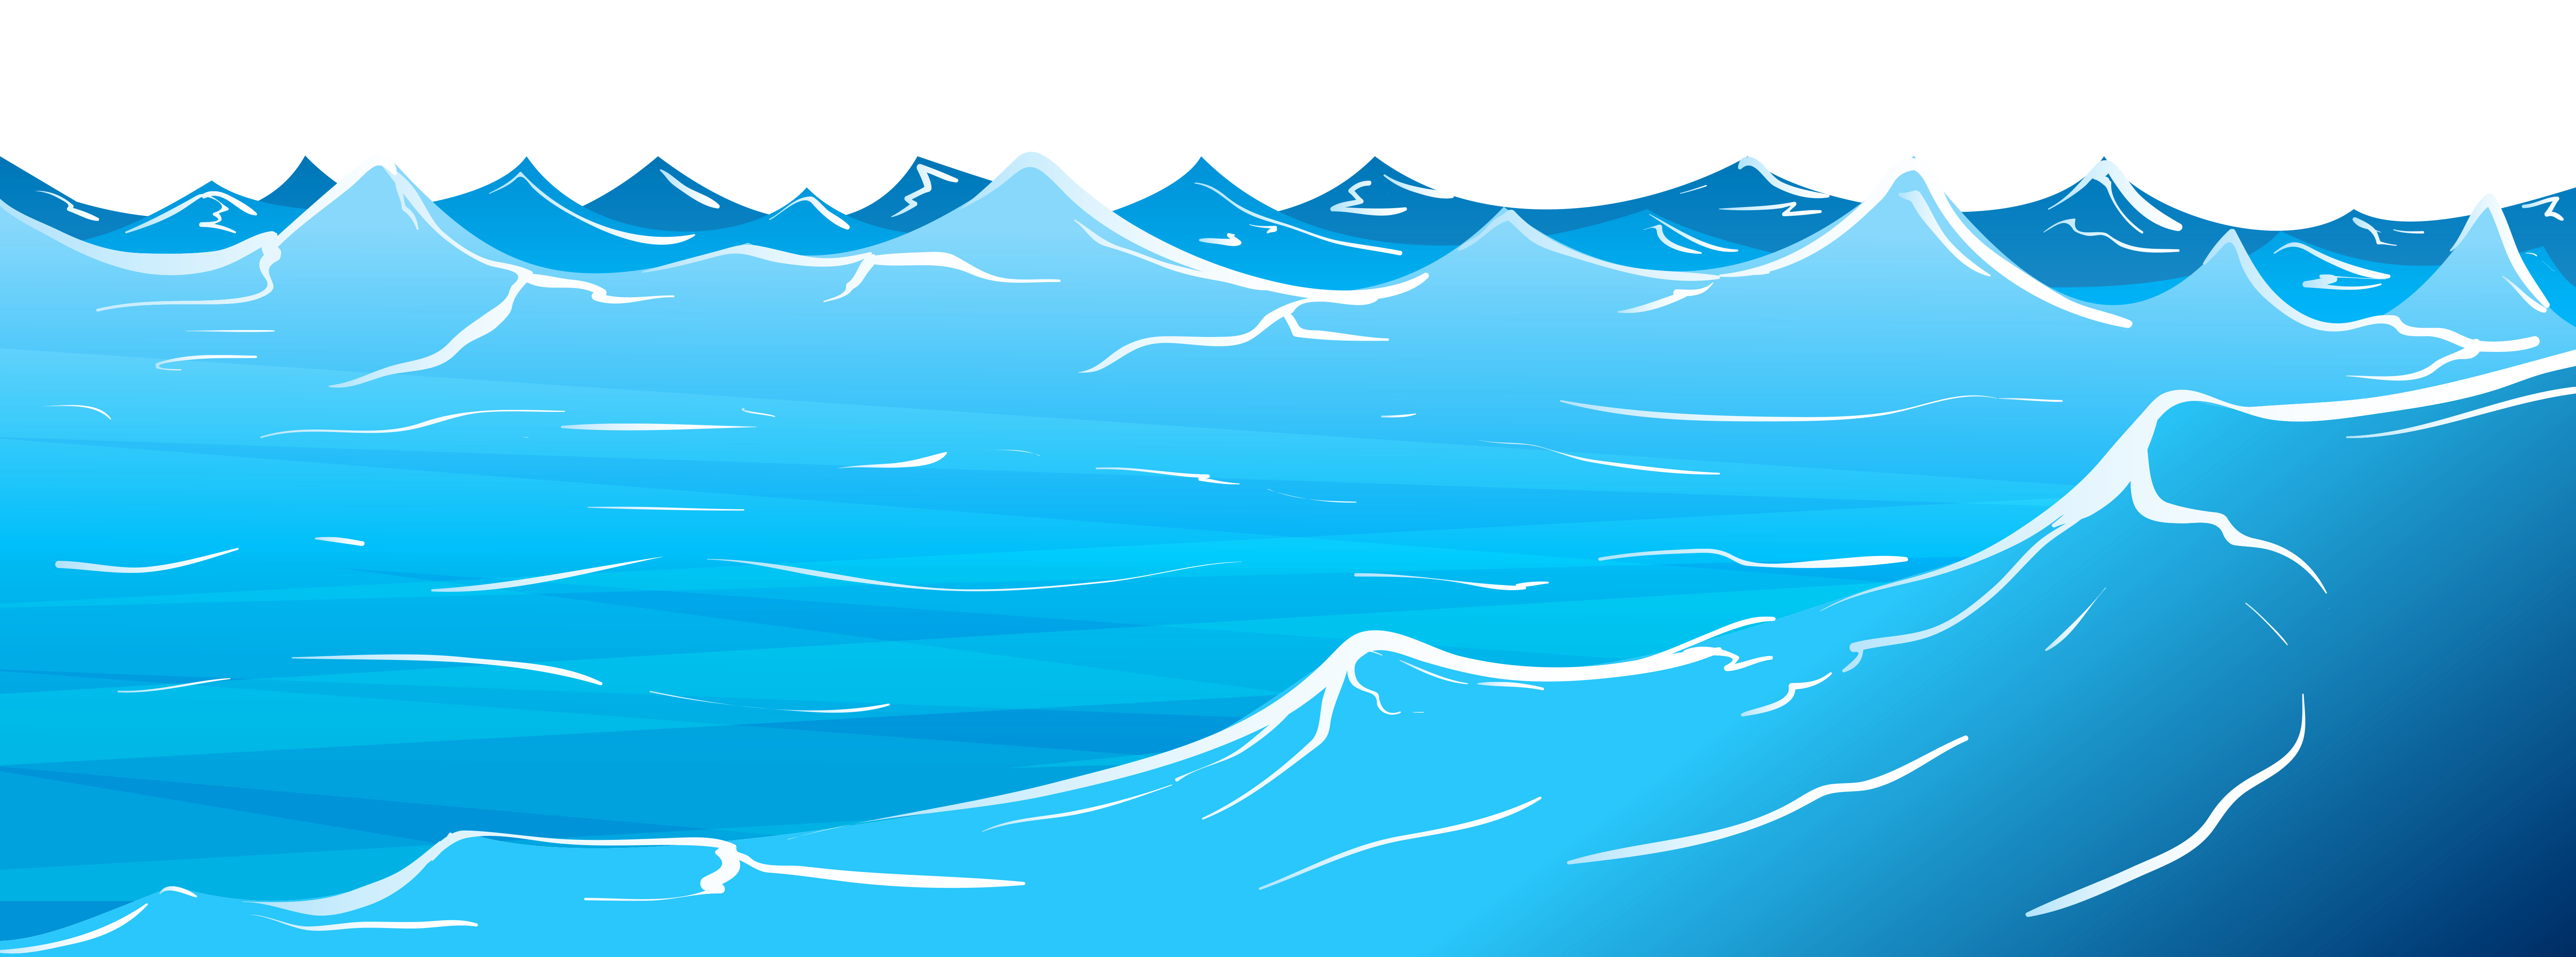 evaporation clipart ocean